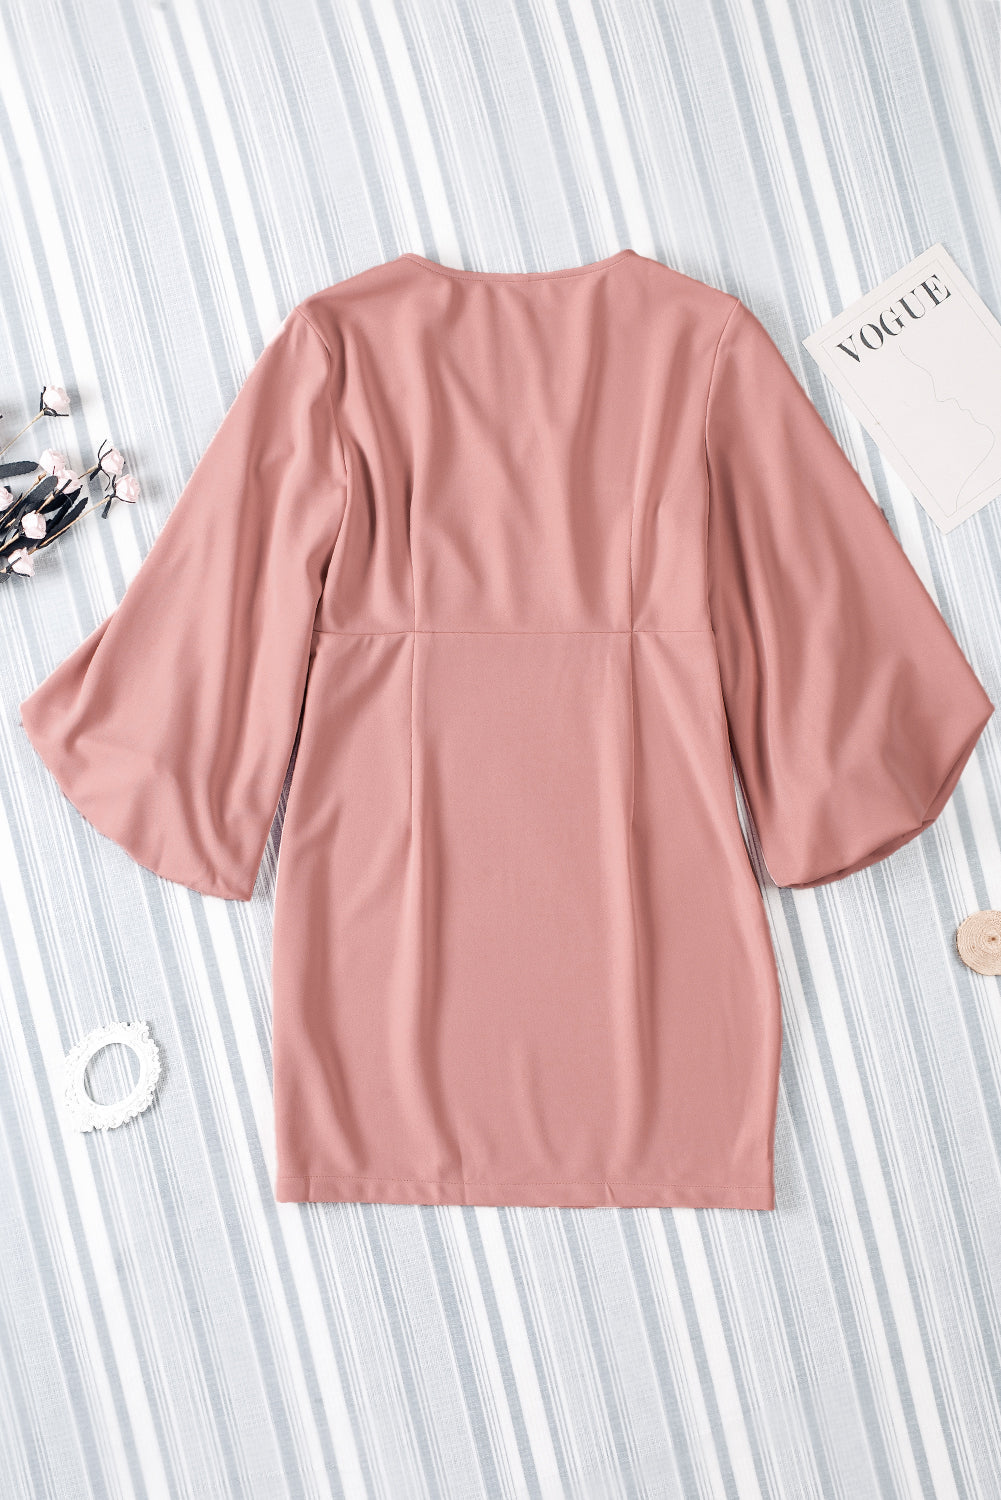 Pink Solid Color V-Neck High Waist Dress